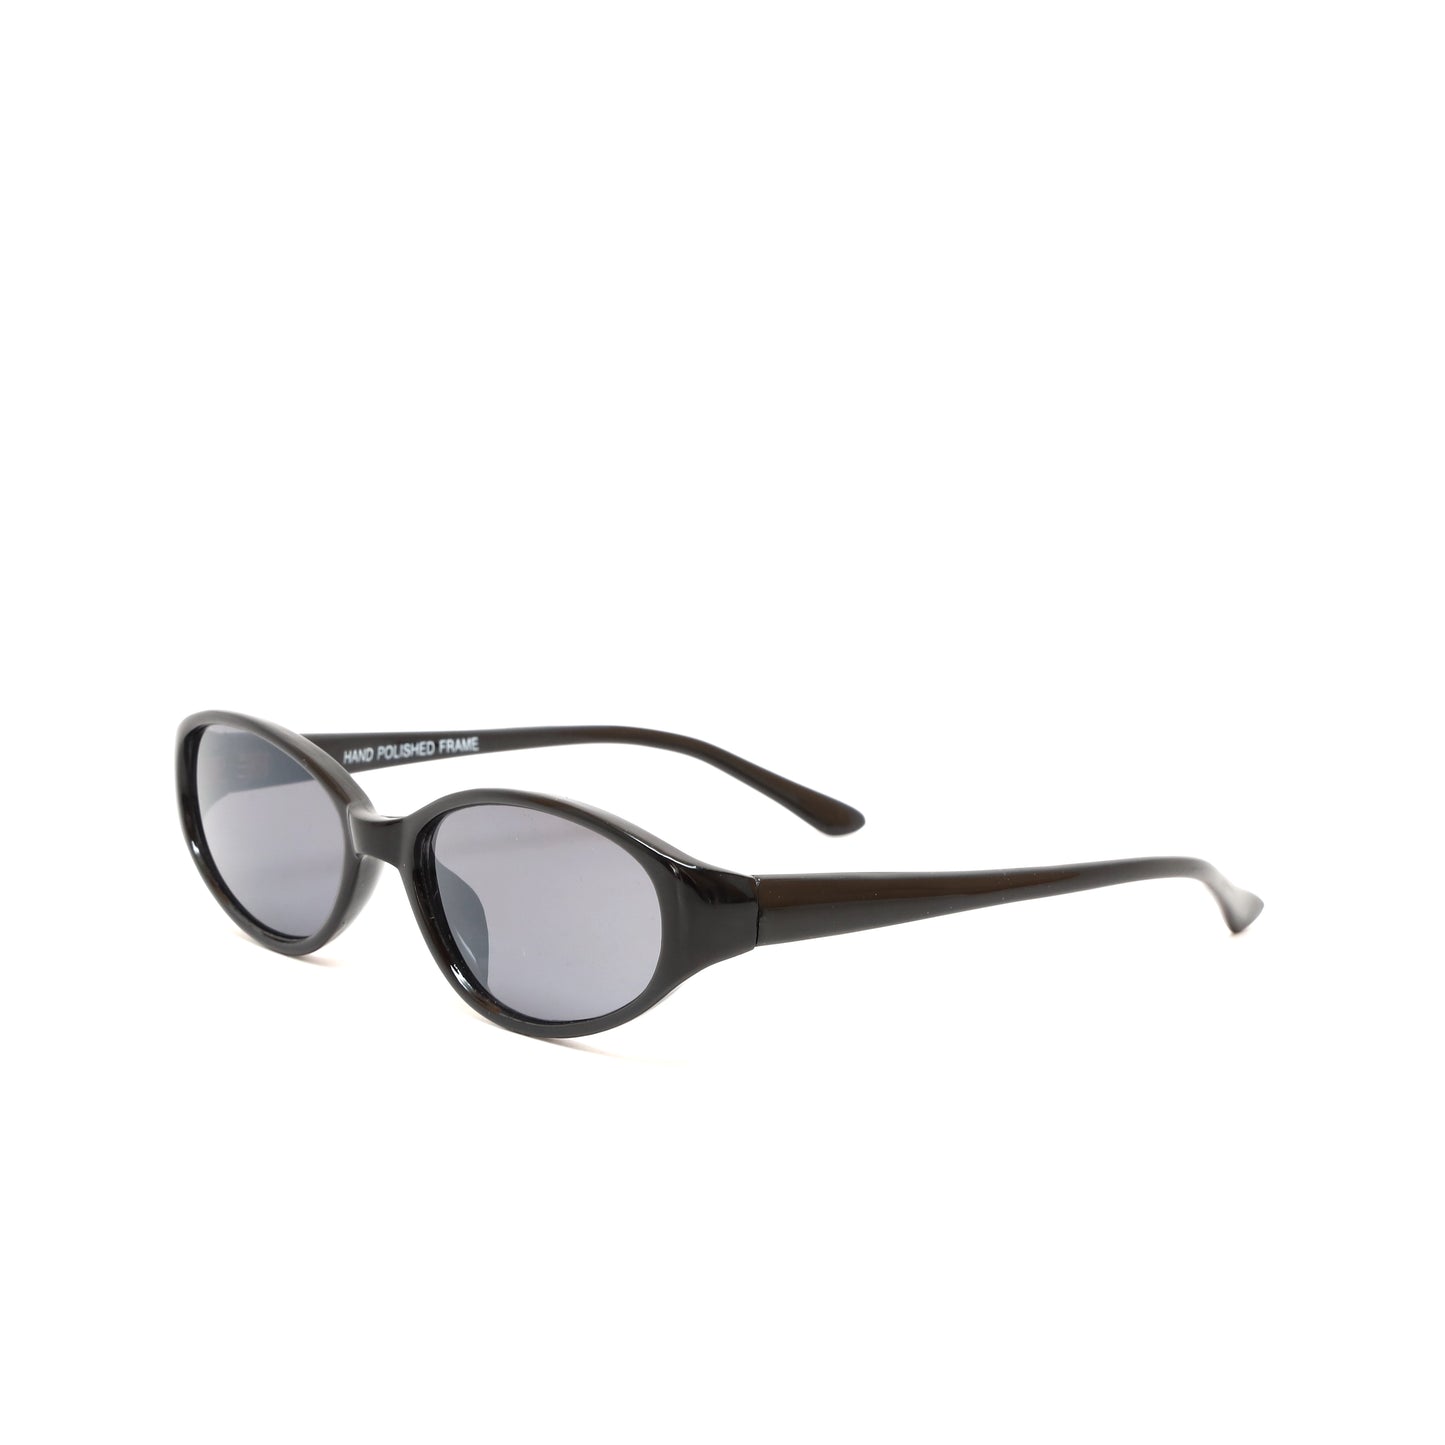 Vintage 1990s Chic Standard Oval Frame Sunglasses - Black